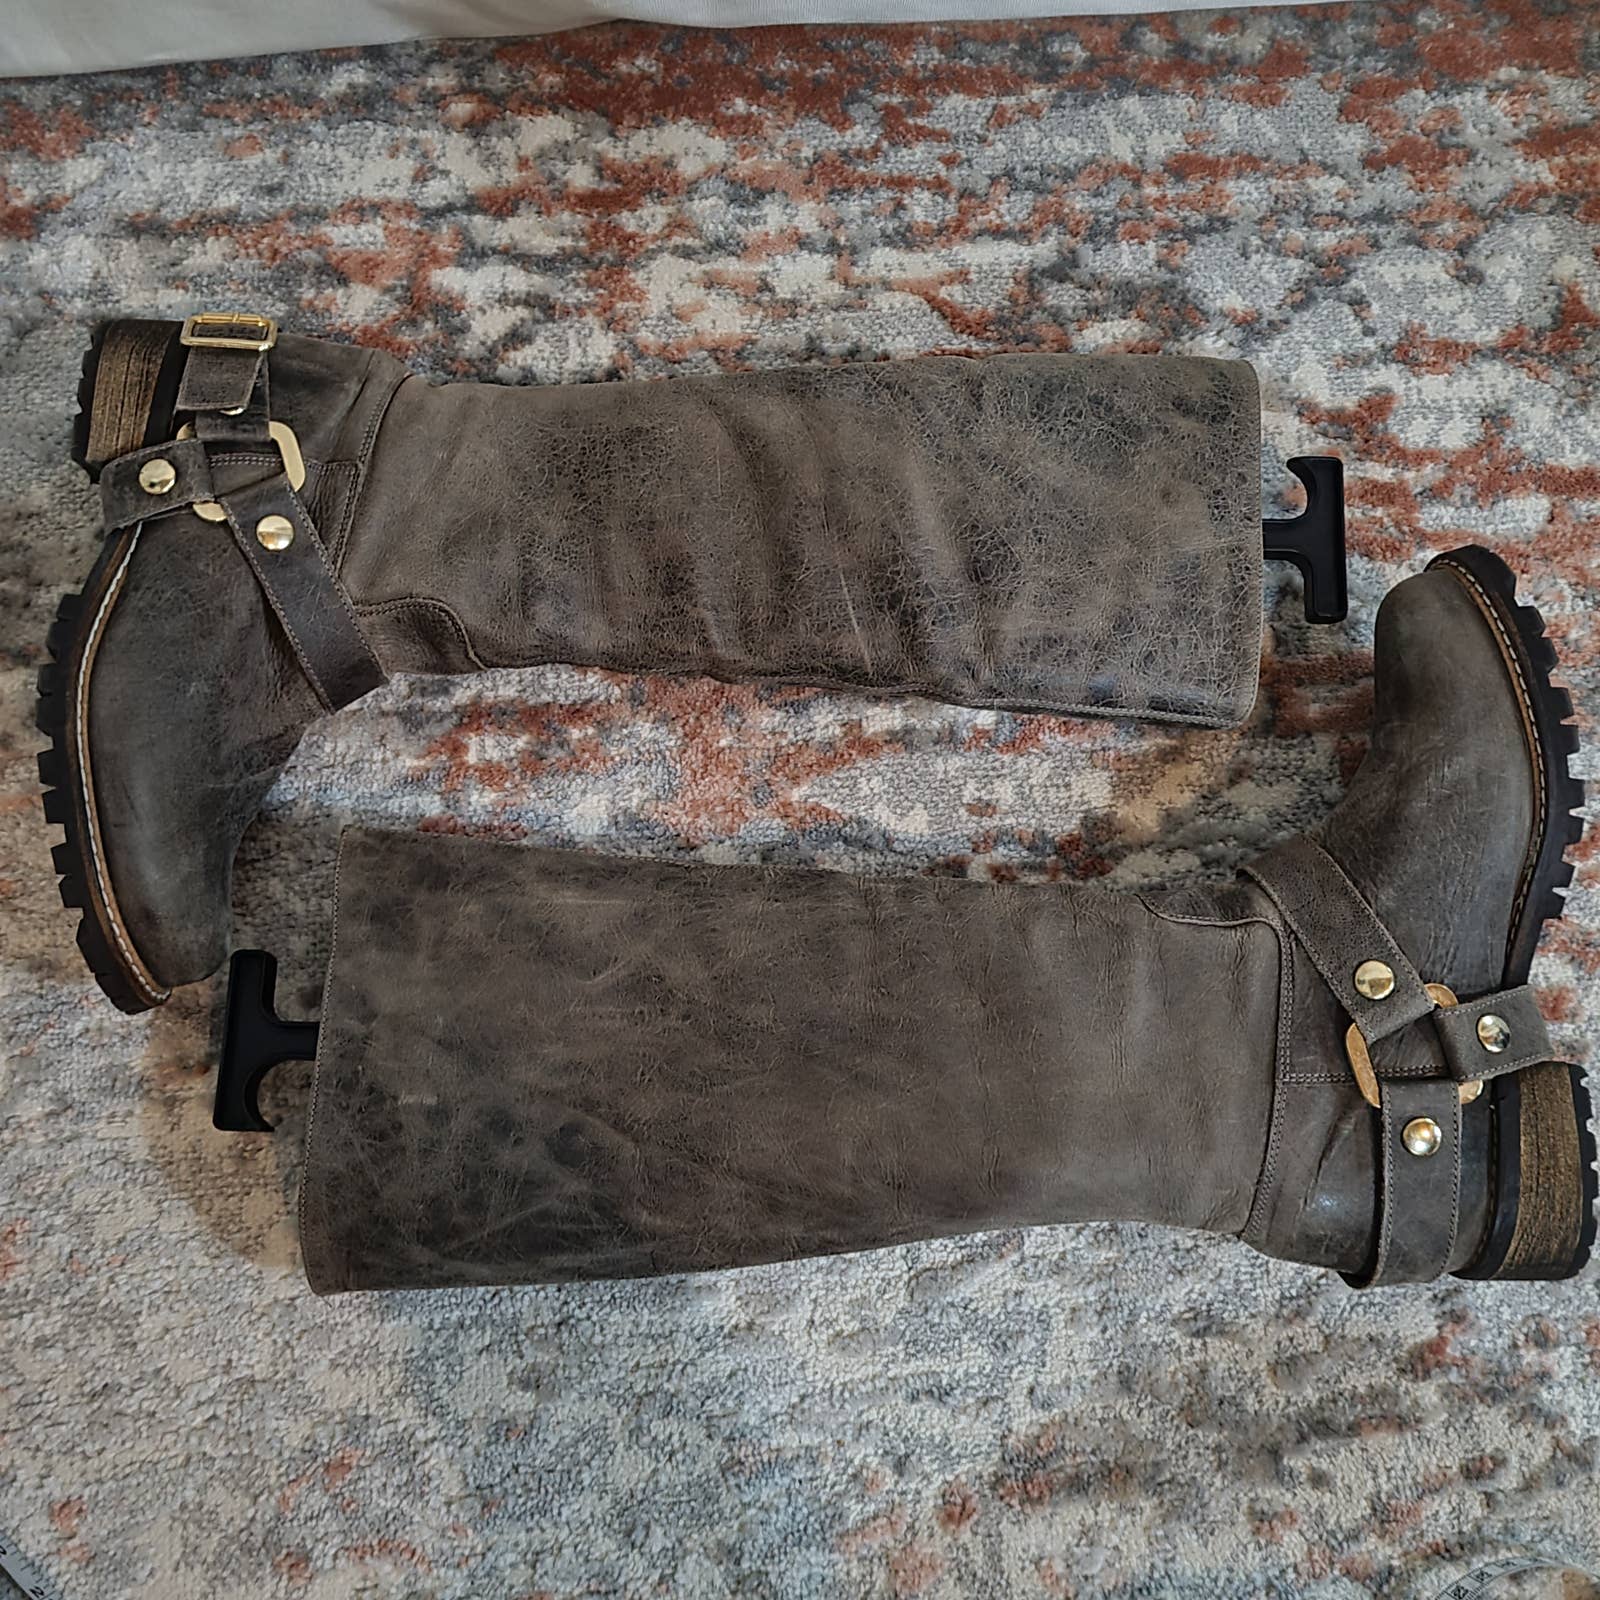 KG by Kurt Geiger Brown Leather Riding Boots - Size 7Markita's ClosetKG by Kurt Geiger